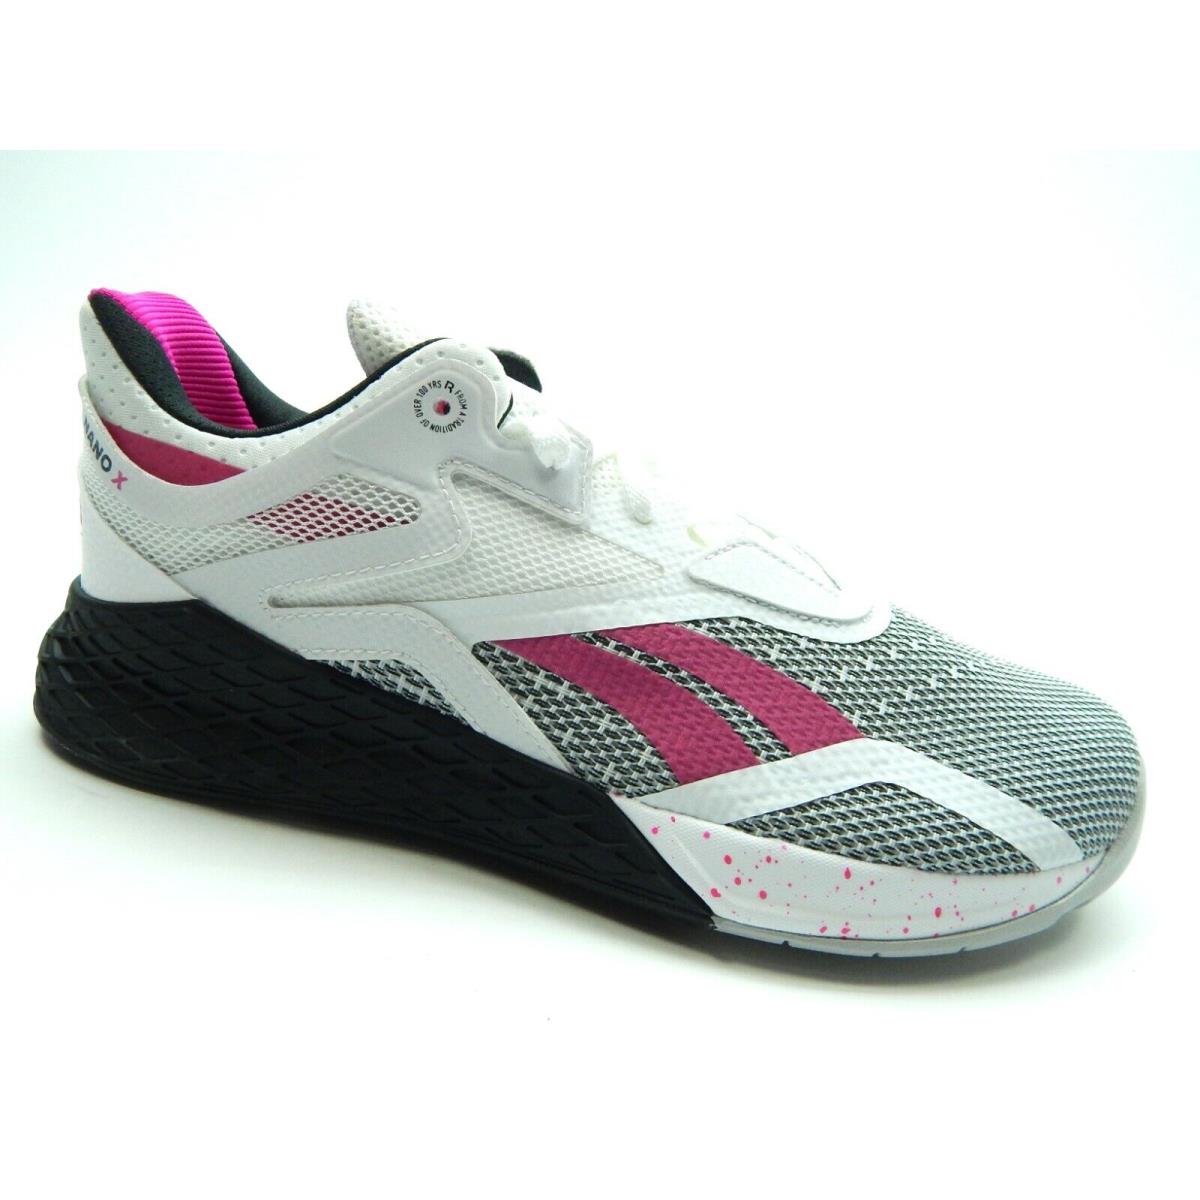 Reebok Nano X Training FV6769 White Black Pink Women Shoes Size 5.5